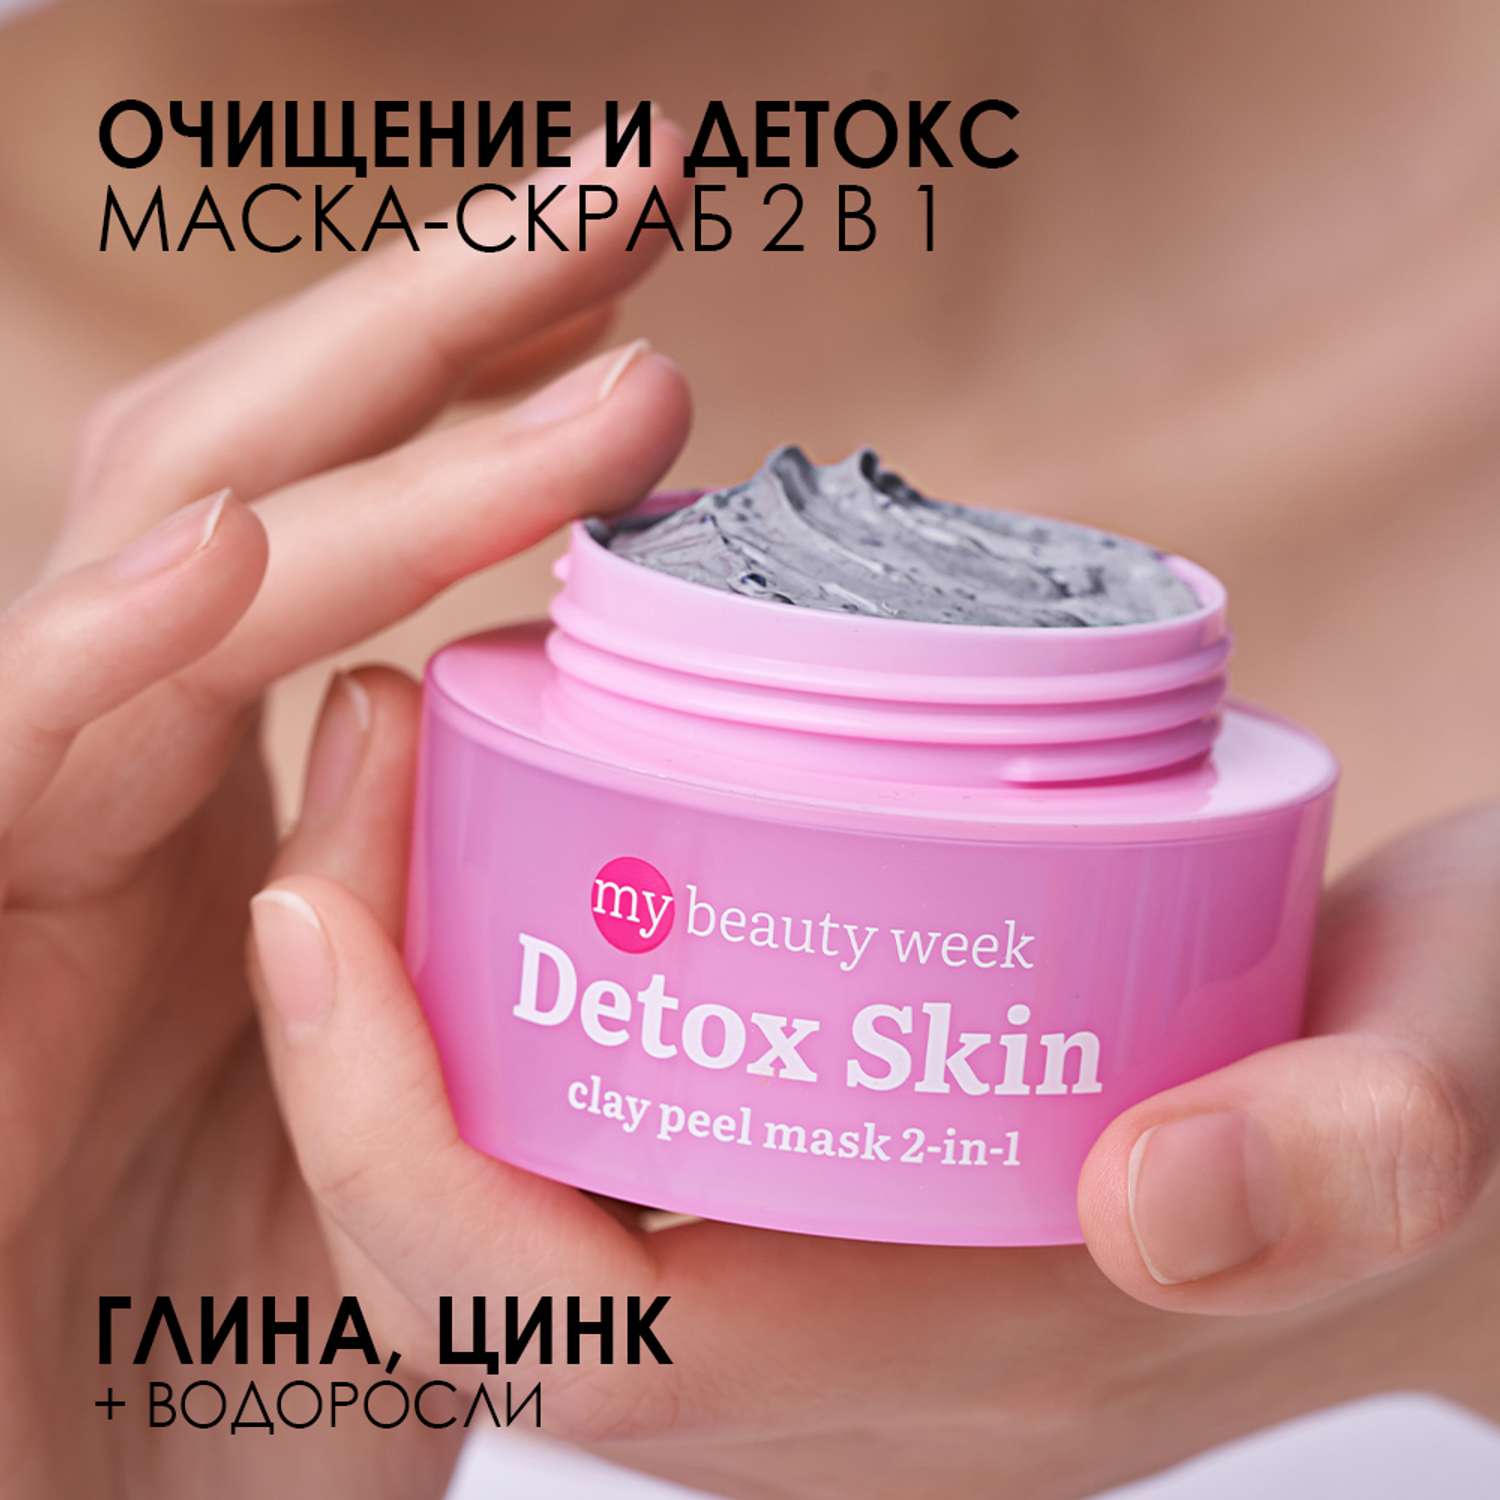 Маска для лица 7DAYS Detox skin очищающая с глиной 2-в-1 - фото 2